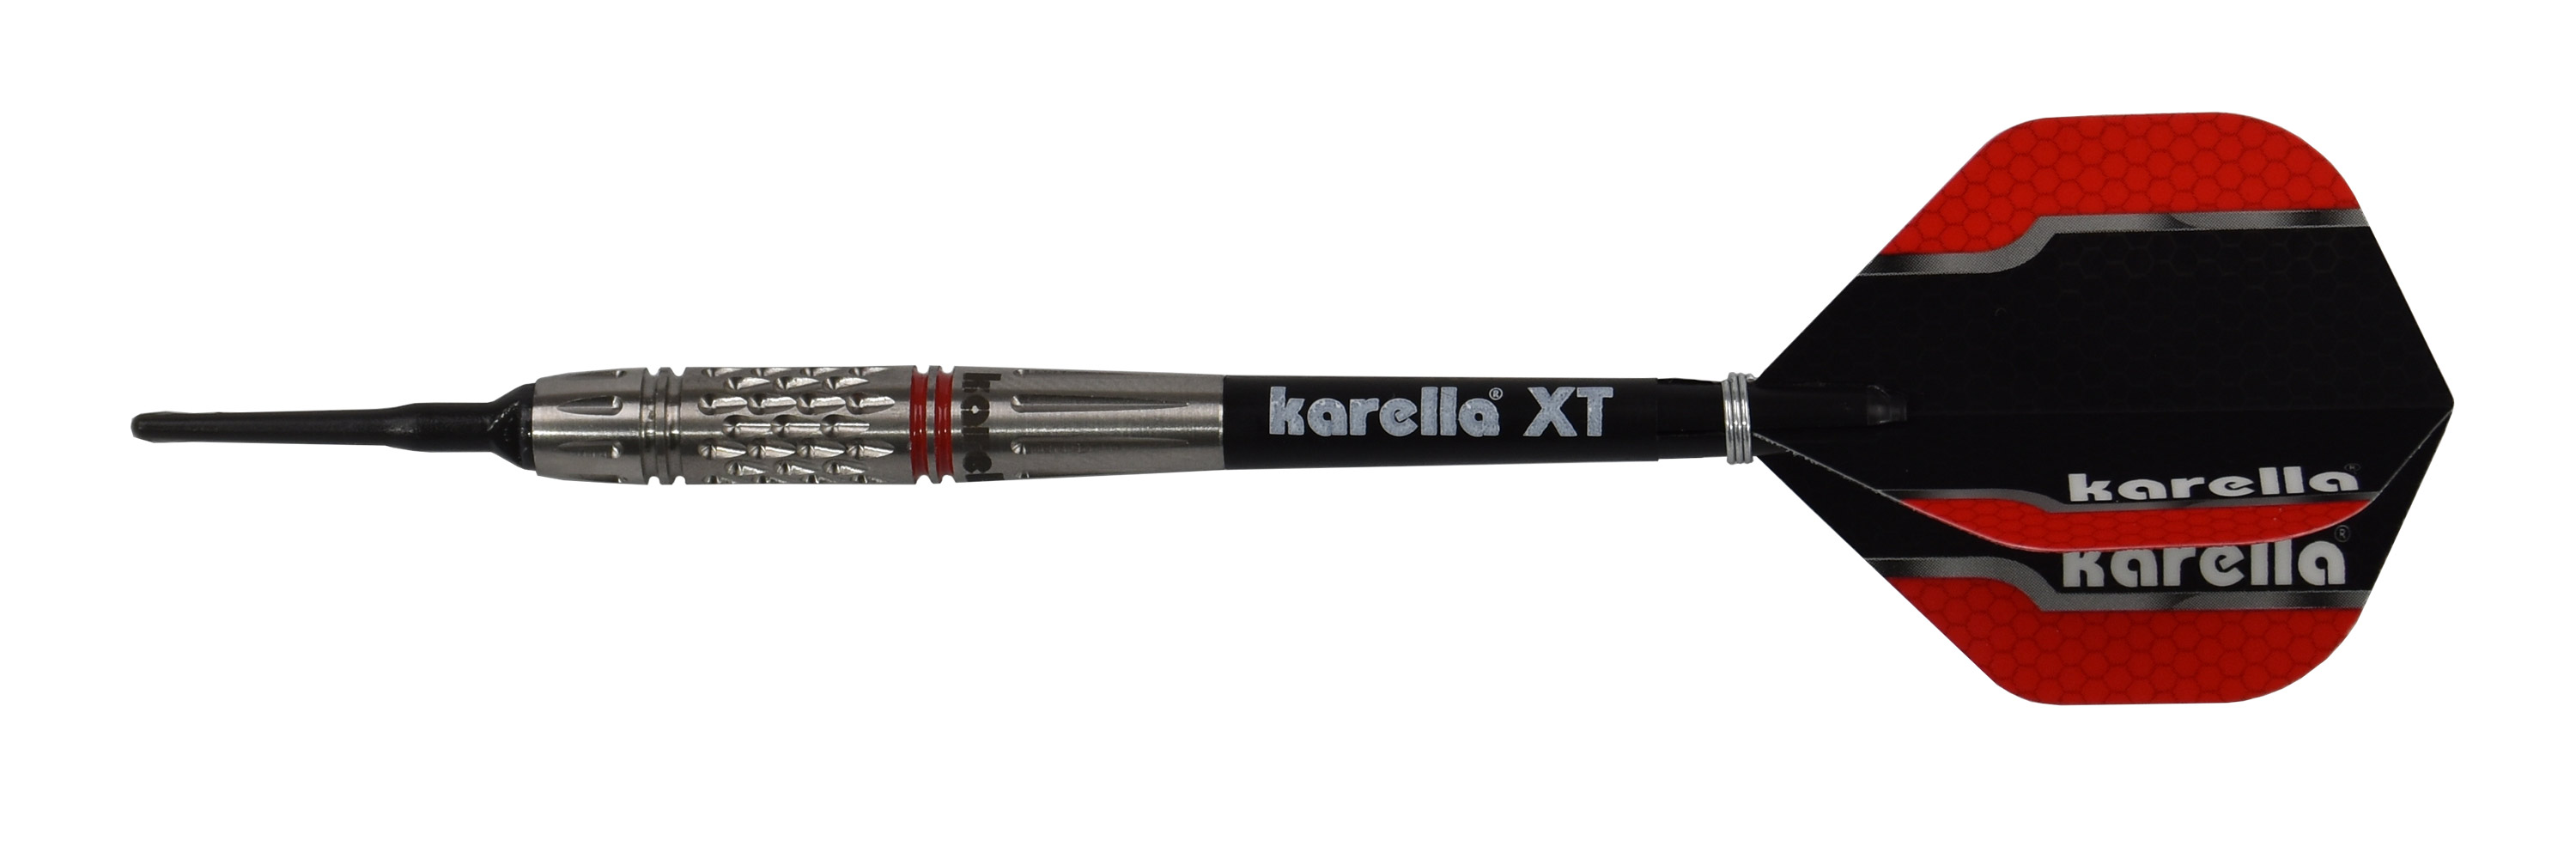 Softdart Karella Commander, silber, 90% Tungsten, 19g oder 21g